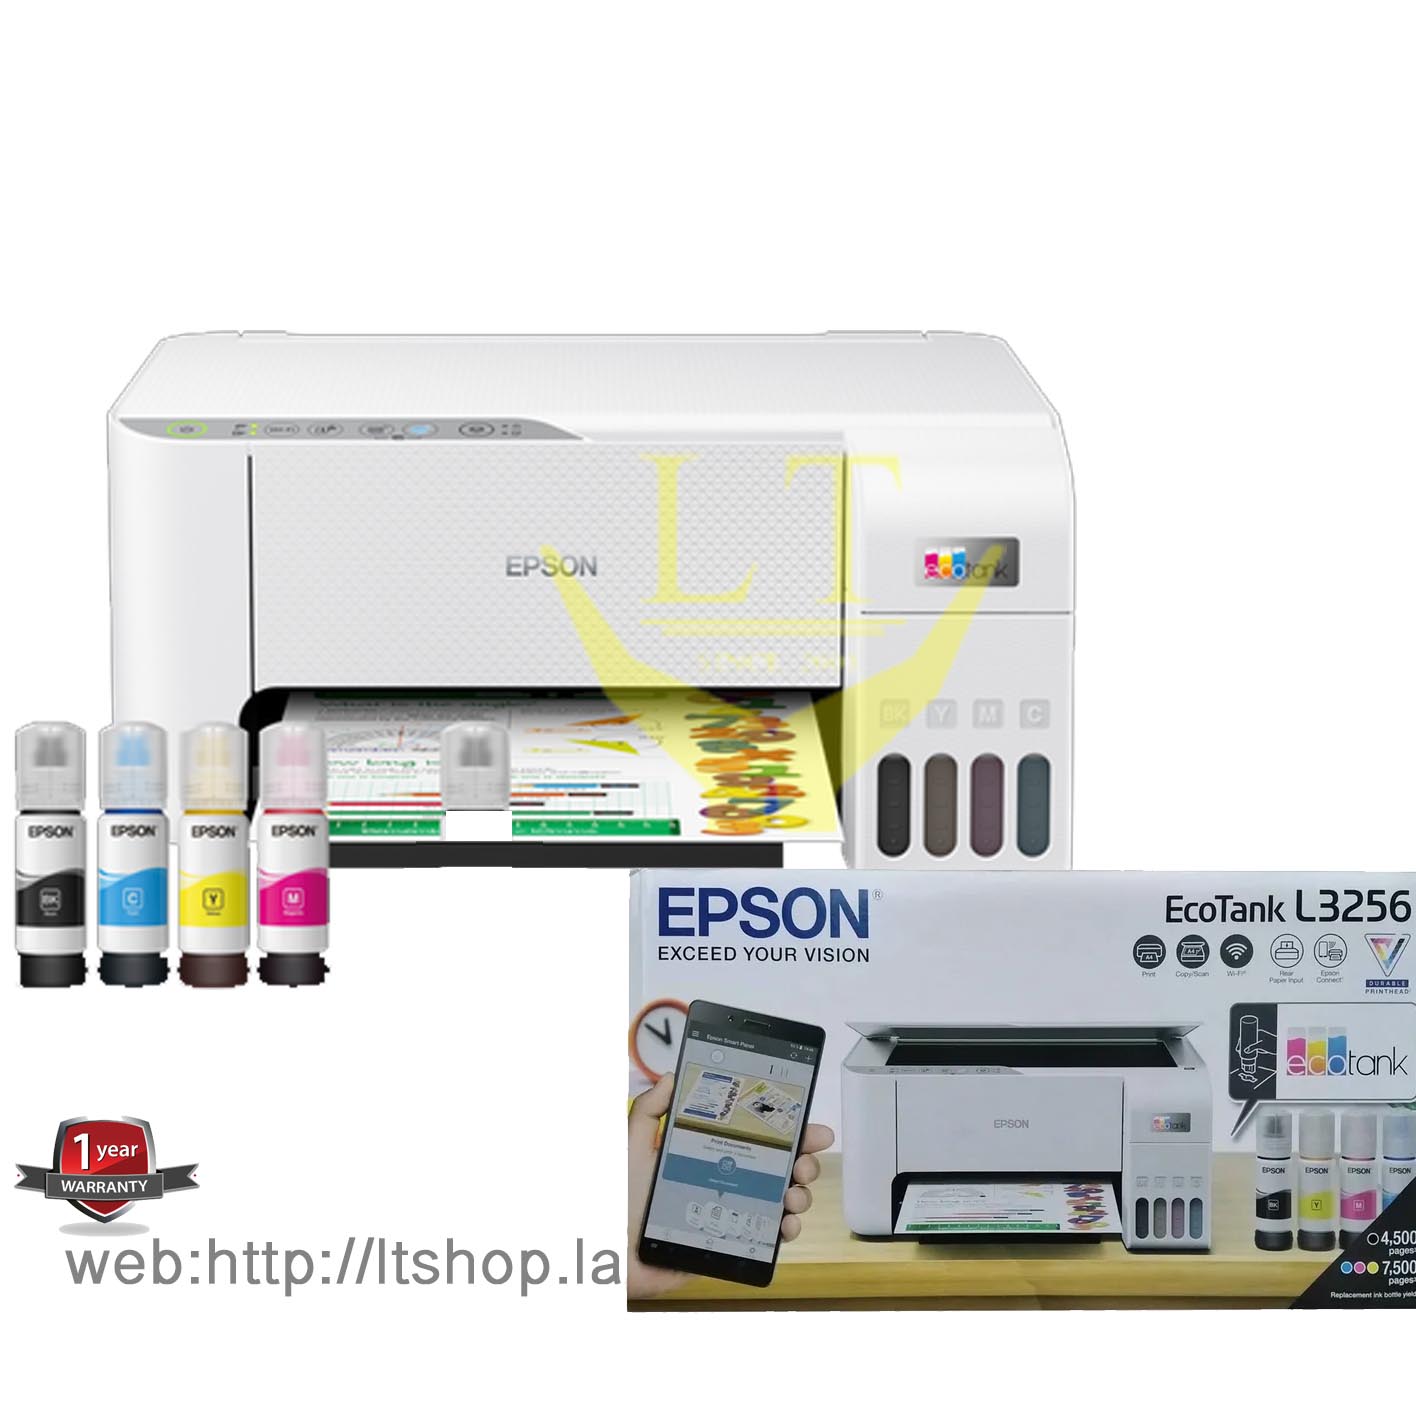 Epson L3256 Ink Tank Print Scan Copy Wifi 3991